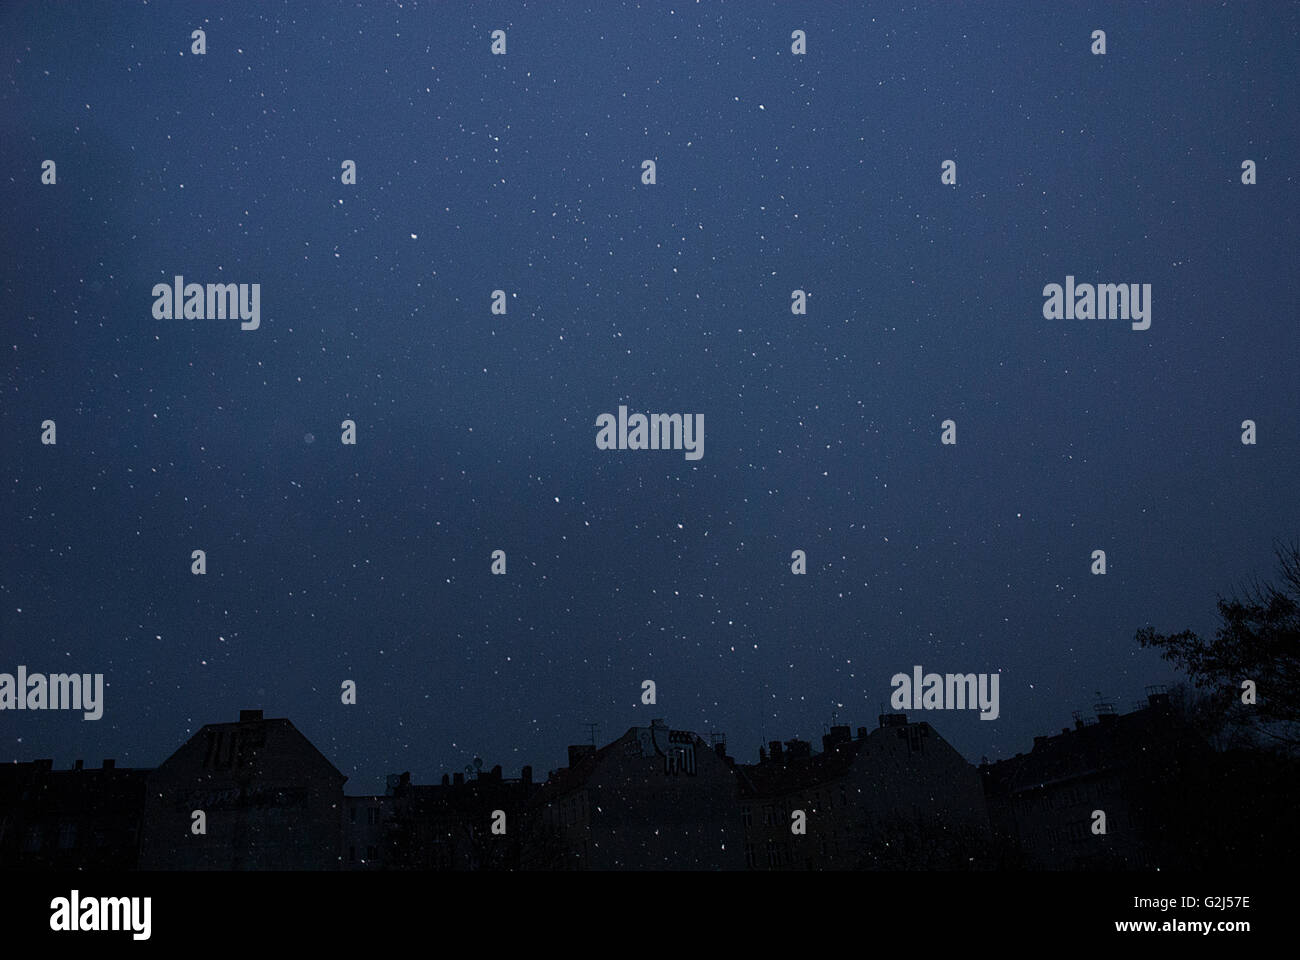 Night Sky with Snowfall Stock Photo